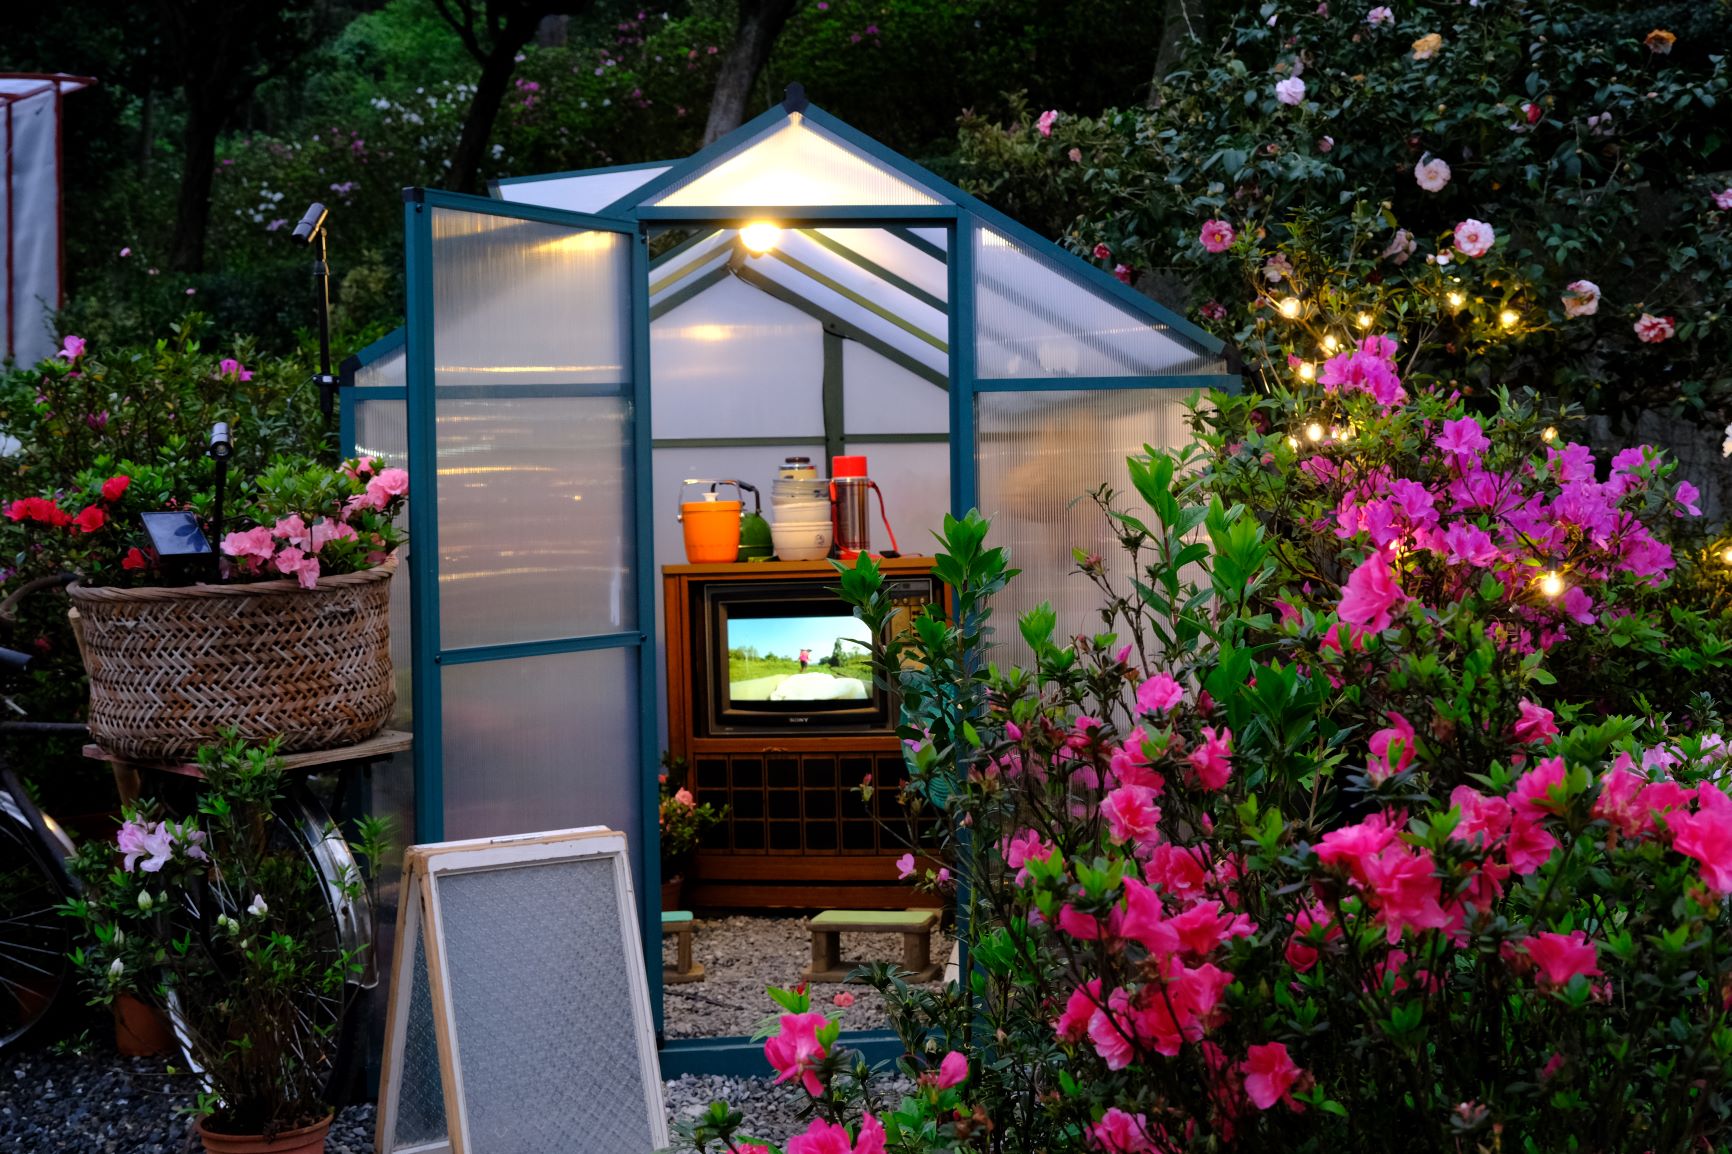  LoLA CINEMA影像工作室於小溫室中以懷舊電視機播放柳枝芳紀錄影片，以影像方式傳達杜鵑花農辛苦